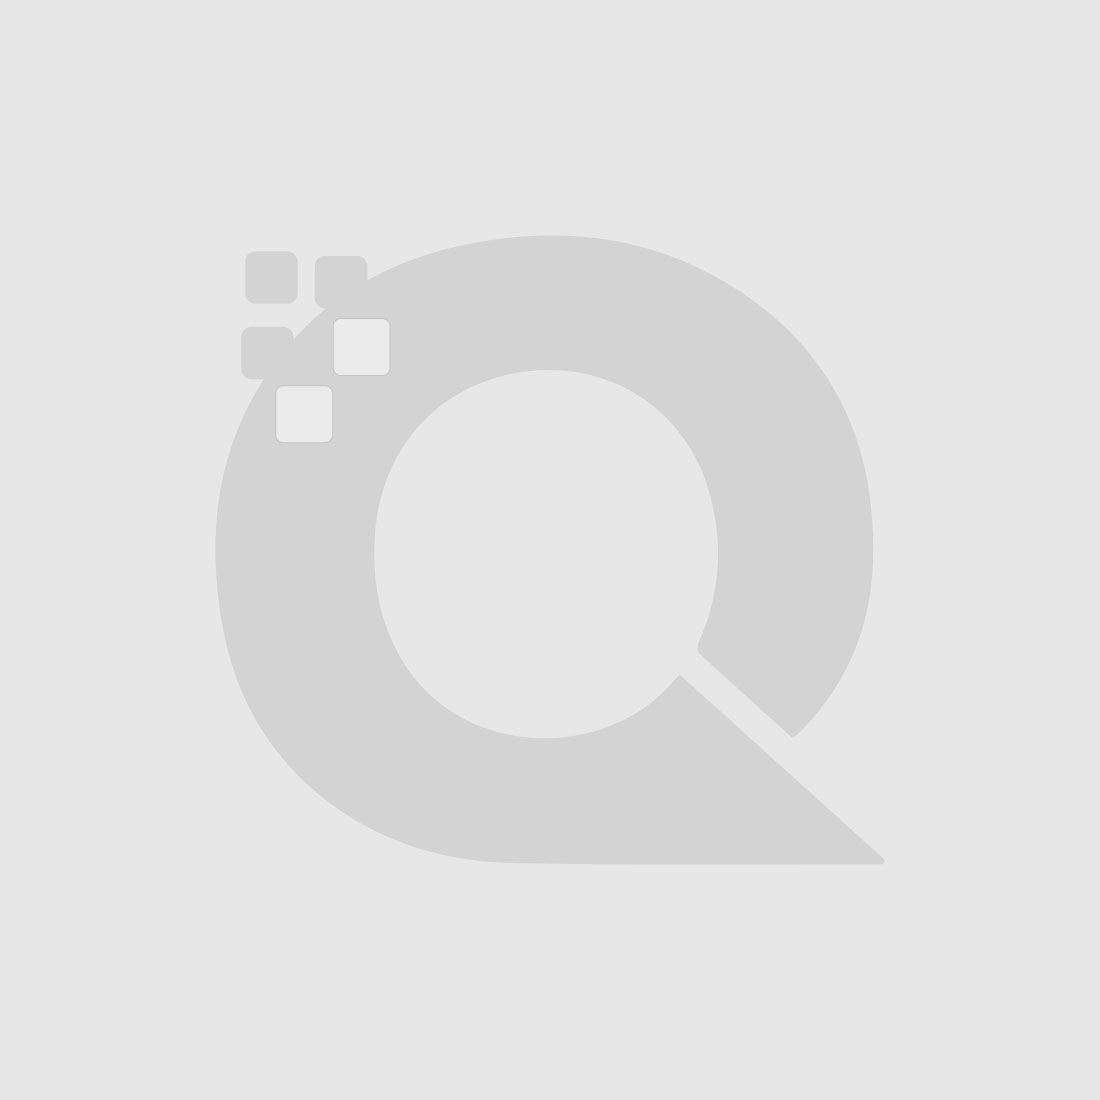 Guerniss Paris Velvet Matte Lipstick - GS028 - 3.5g